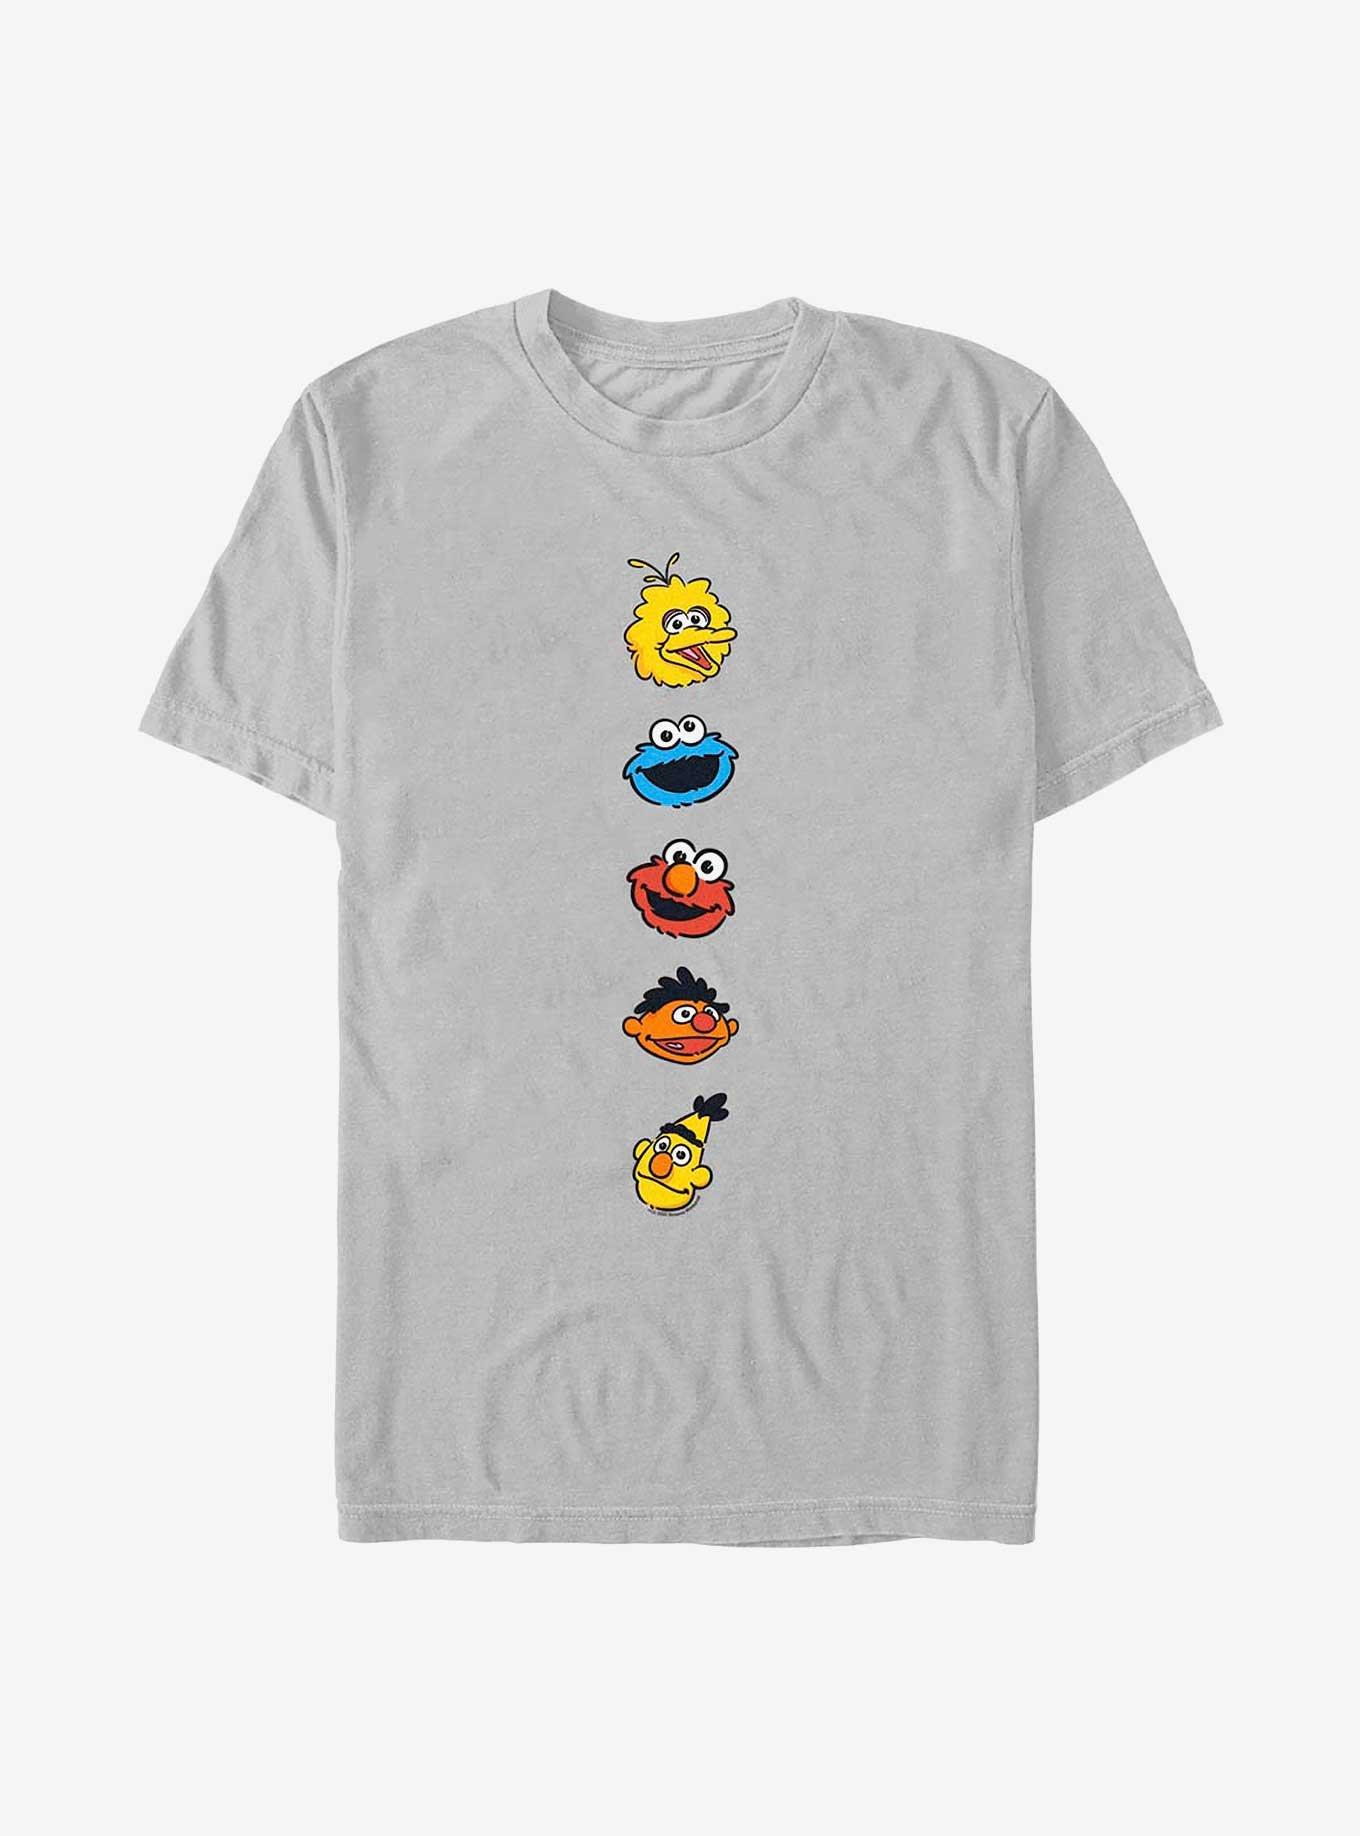 Sesame Street Represent T-Shirt, SILVER, hi-res